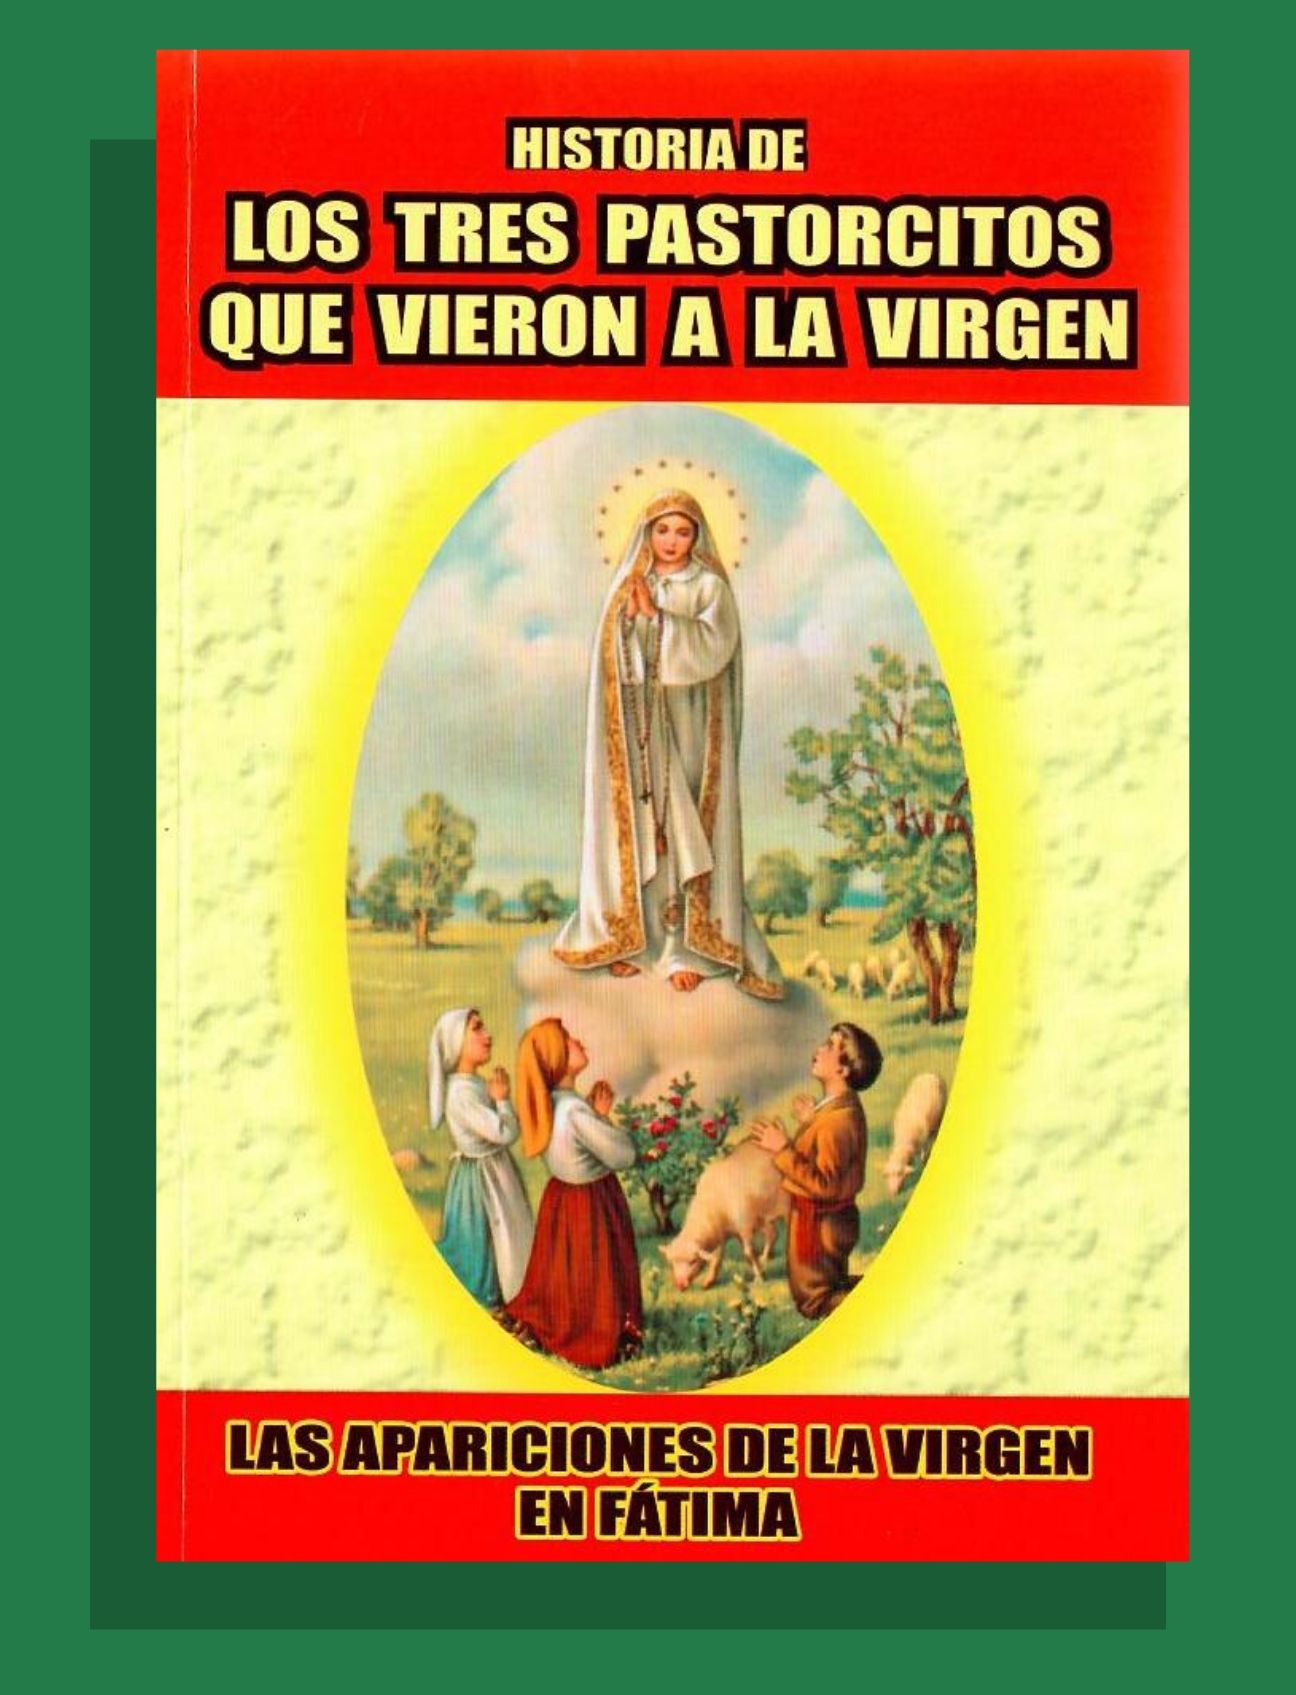 HISTORIA DE LOS TRES PASTORCITOS QUE VIERON A LA VIRGEN